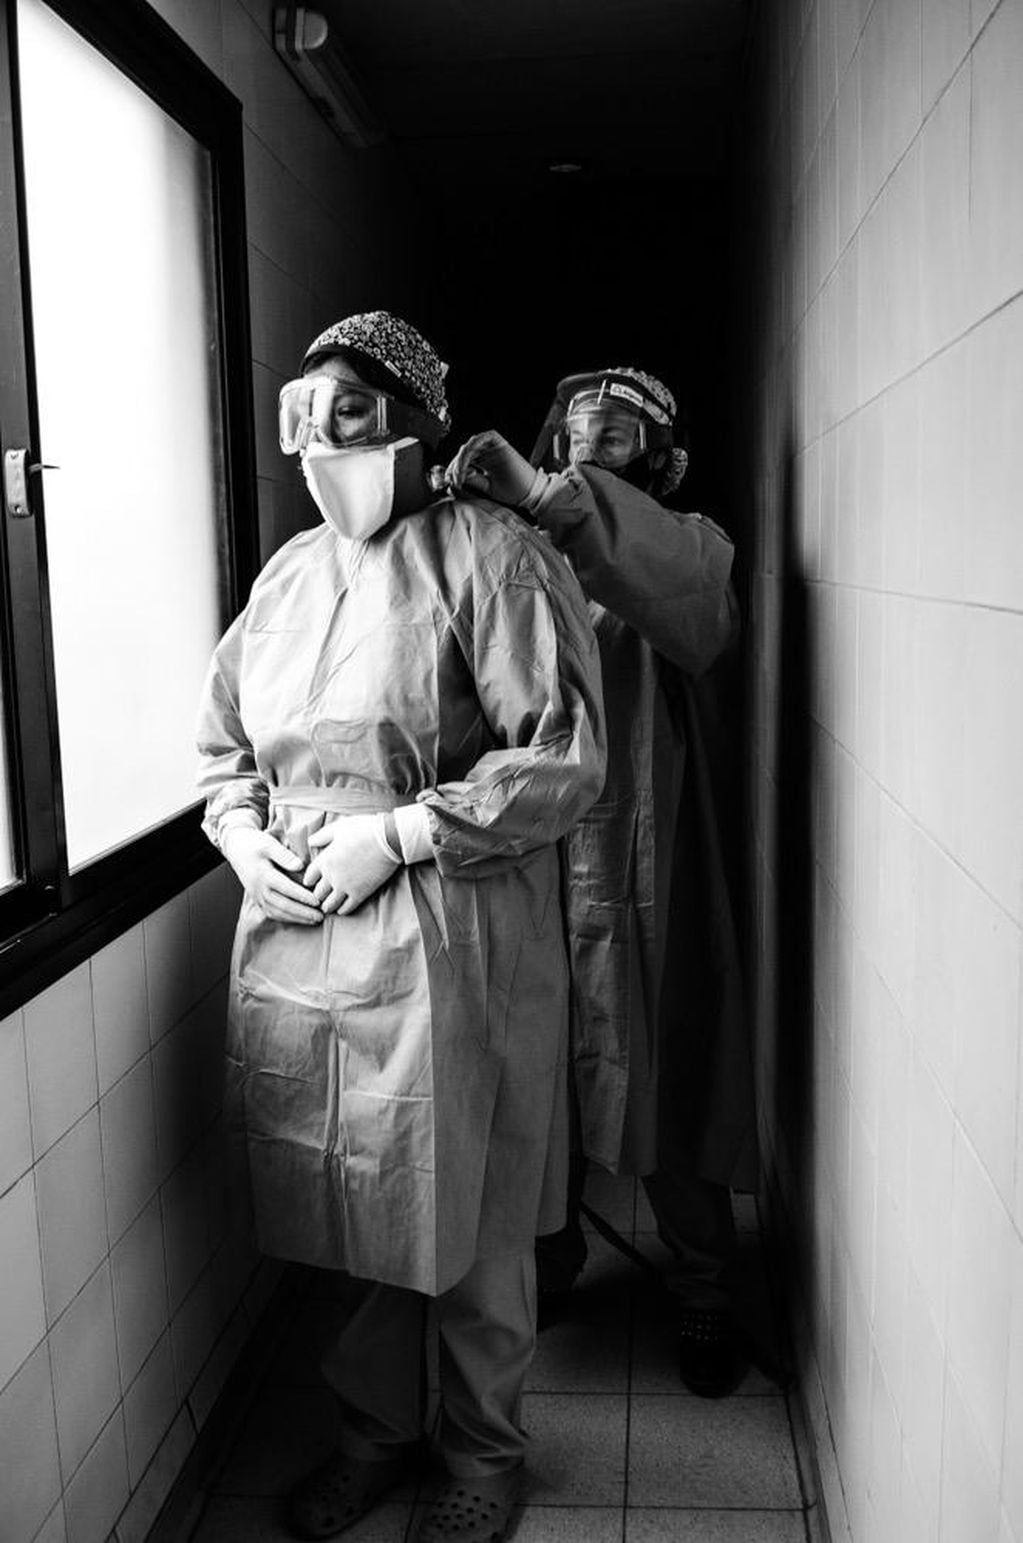 El cardiólogo mendocino Martín Repetto vuelca su pasión por la fotografía y muestra imágenes de sus colegas. Este imagen de unas enfermeras se titula "Musas inspiradoras".